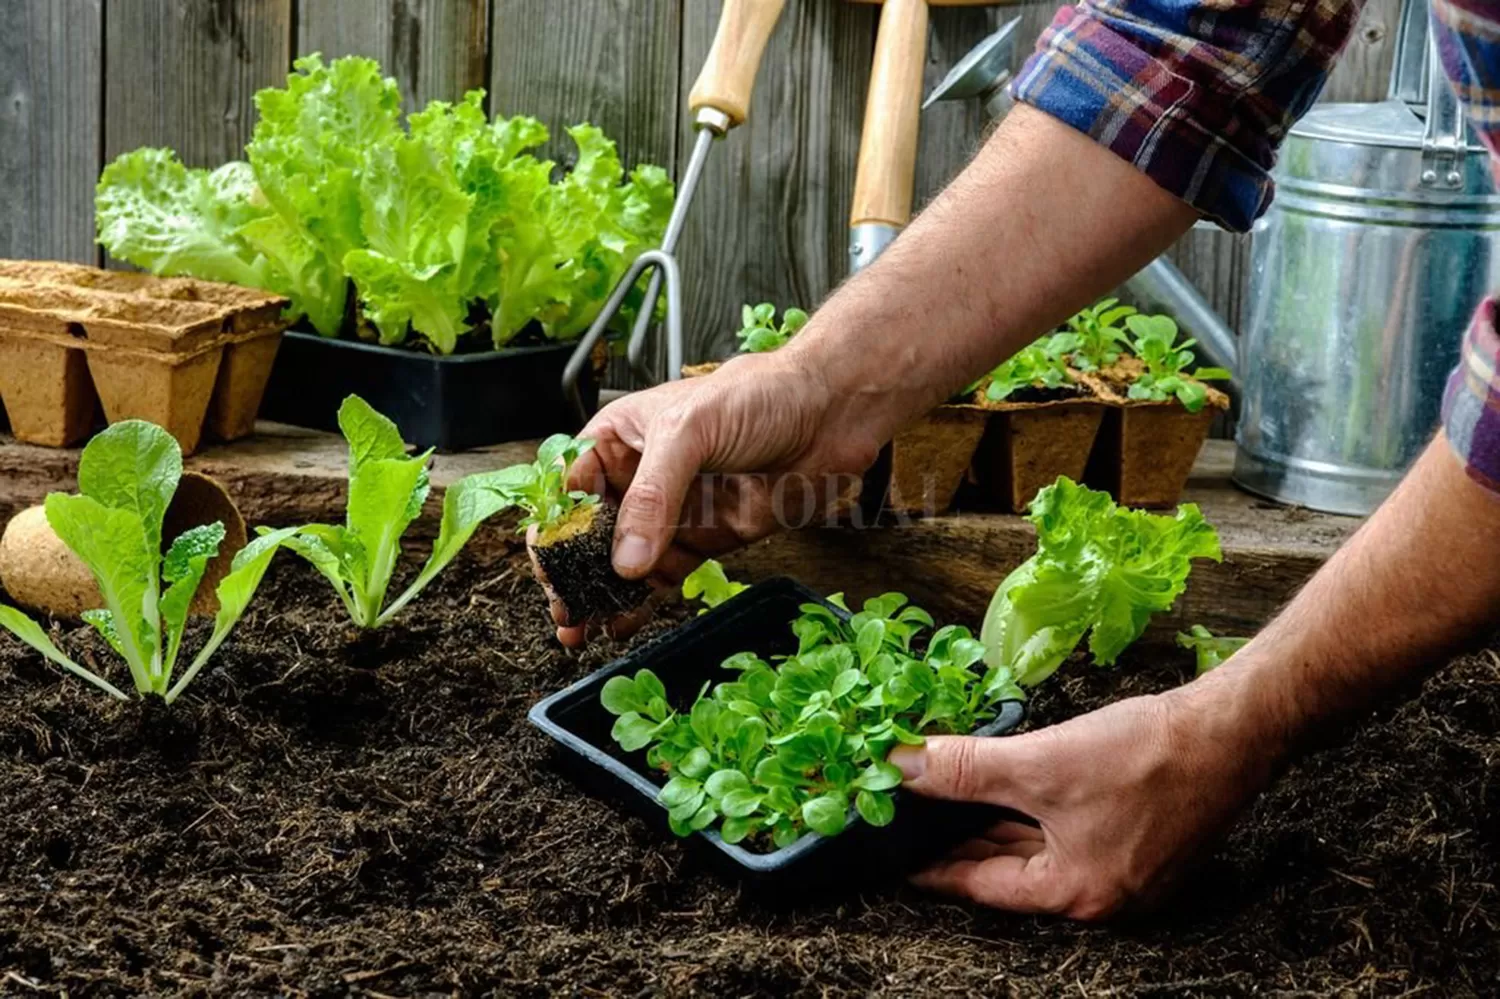 Huertas orgánicas: tutoriales para aprender a cultivar